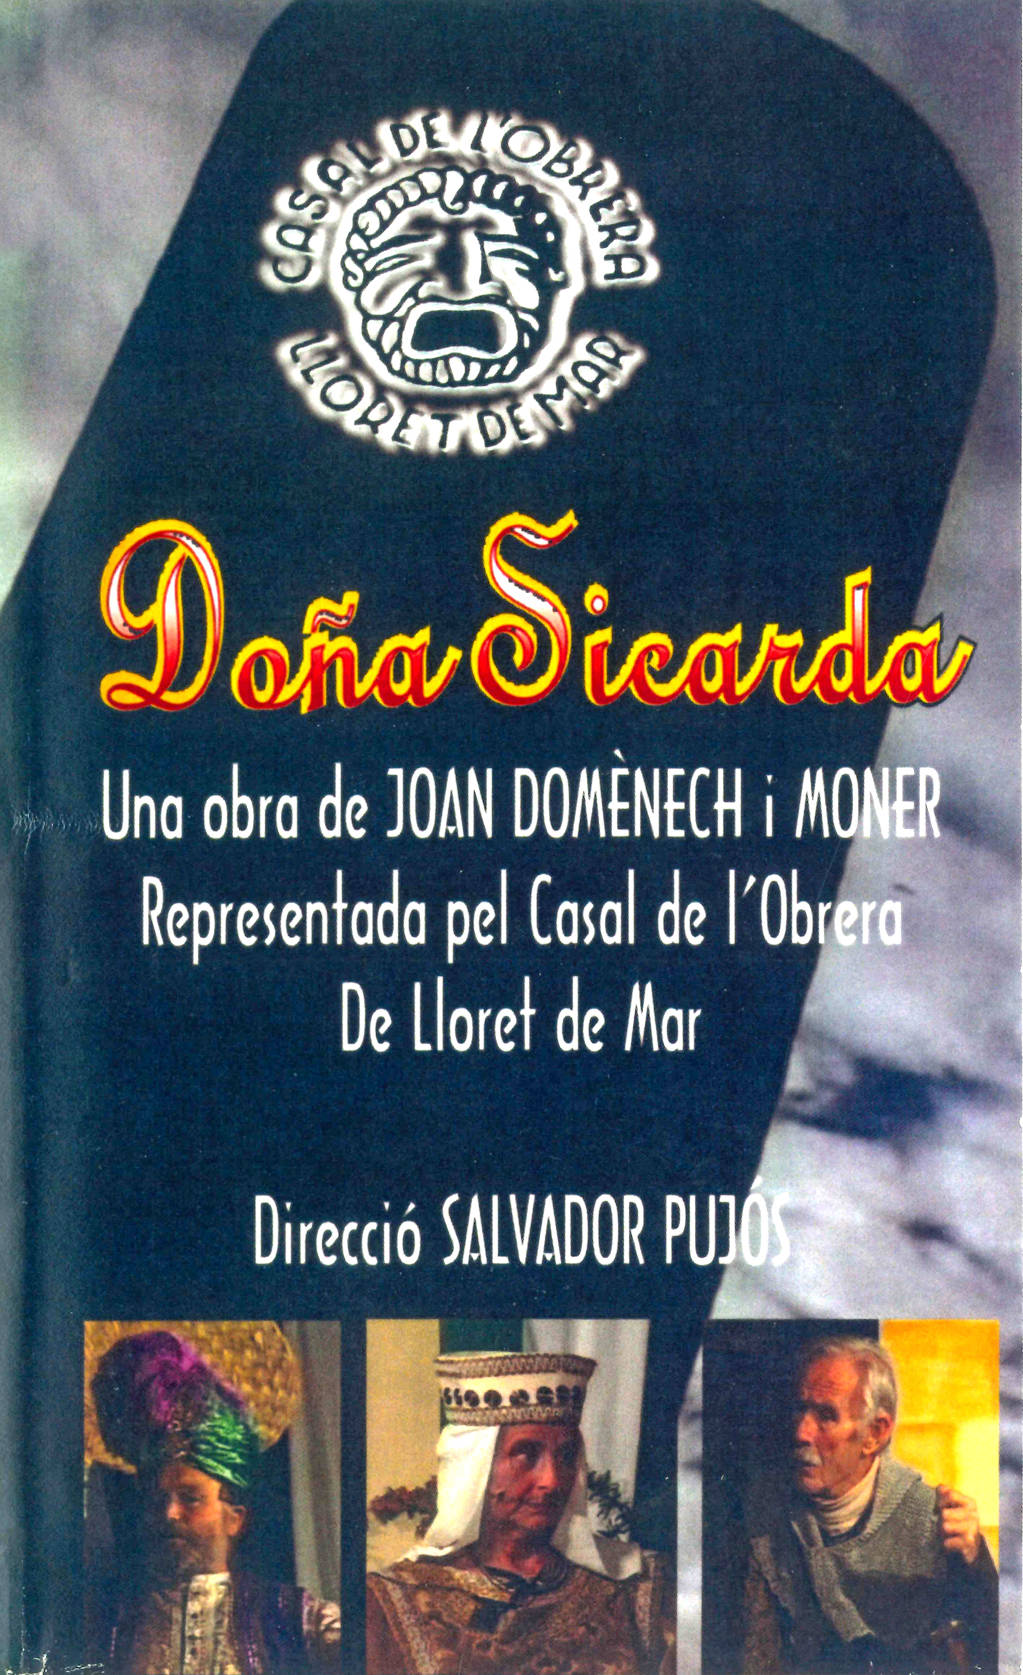 FILM SCREENING OF THE PLAY DOÑA SICARDA